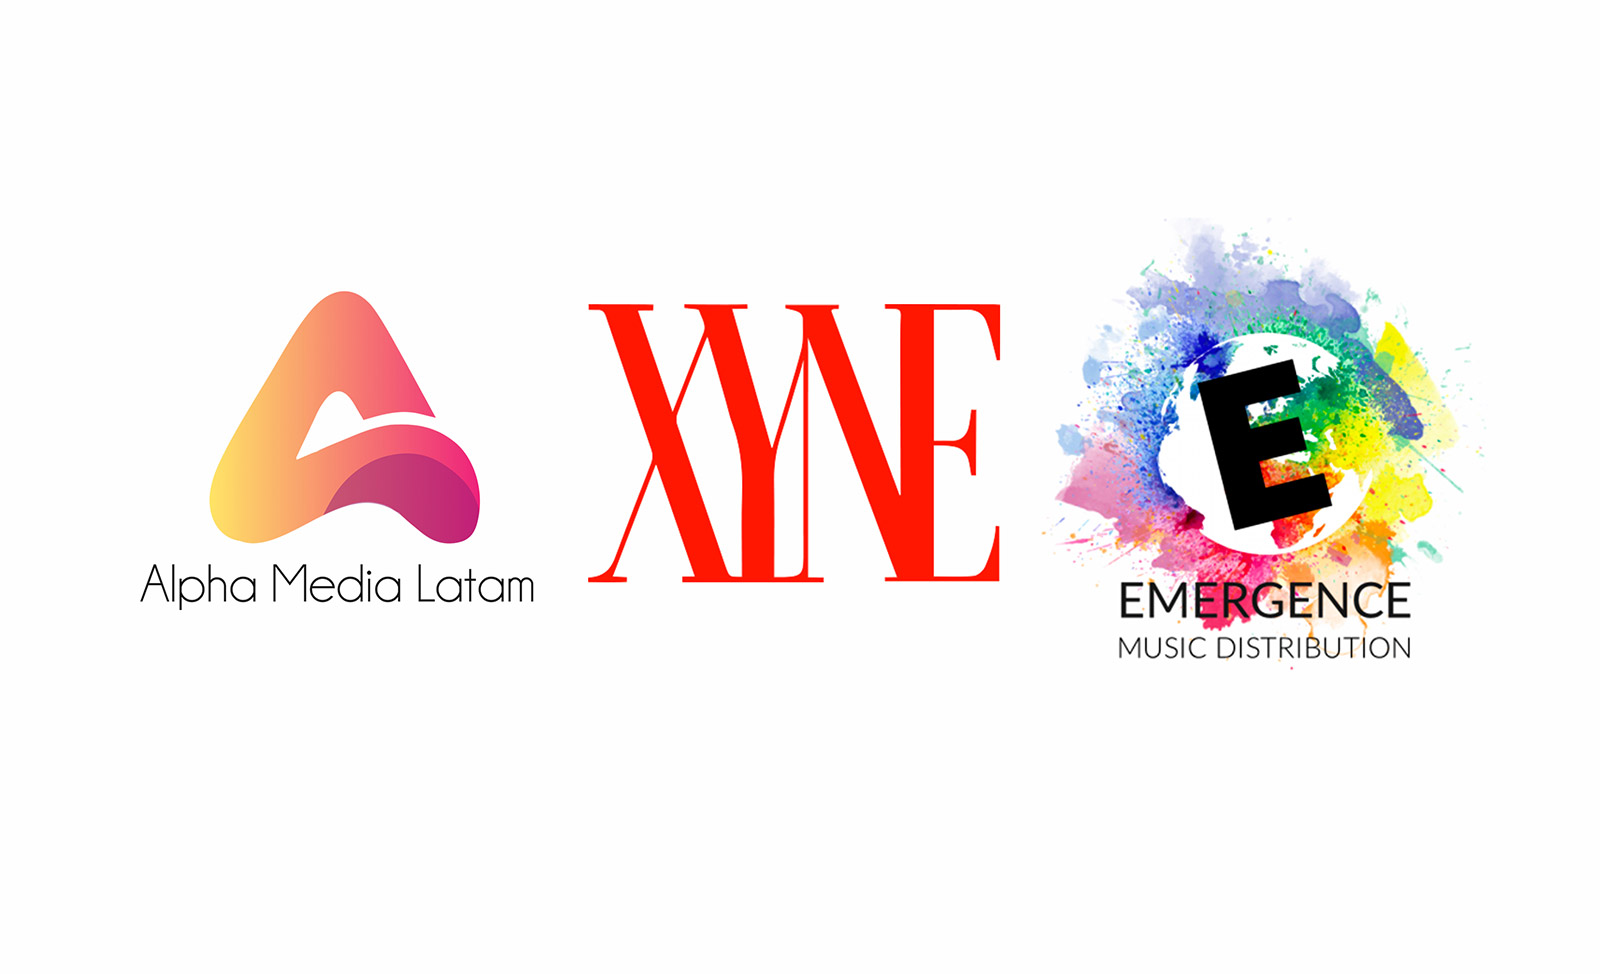 Alpha Media Latam formaliza alianza con las empresas canadienses Emergence Music Distribution y XYNE.